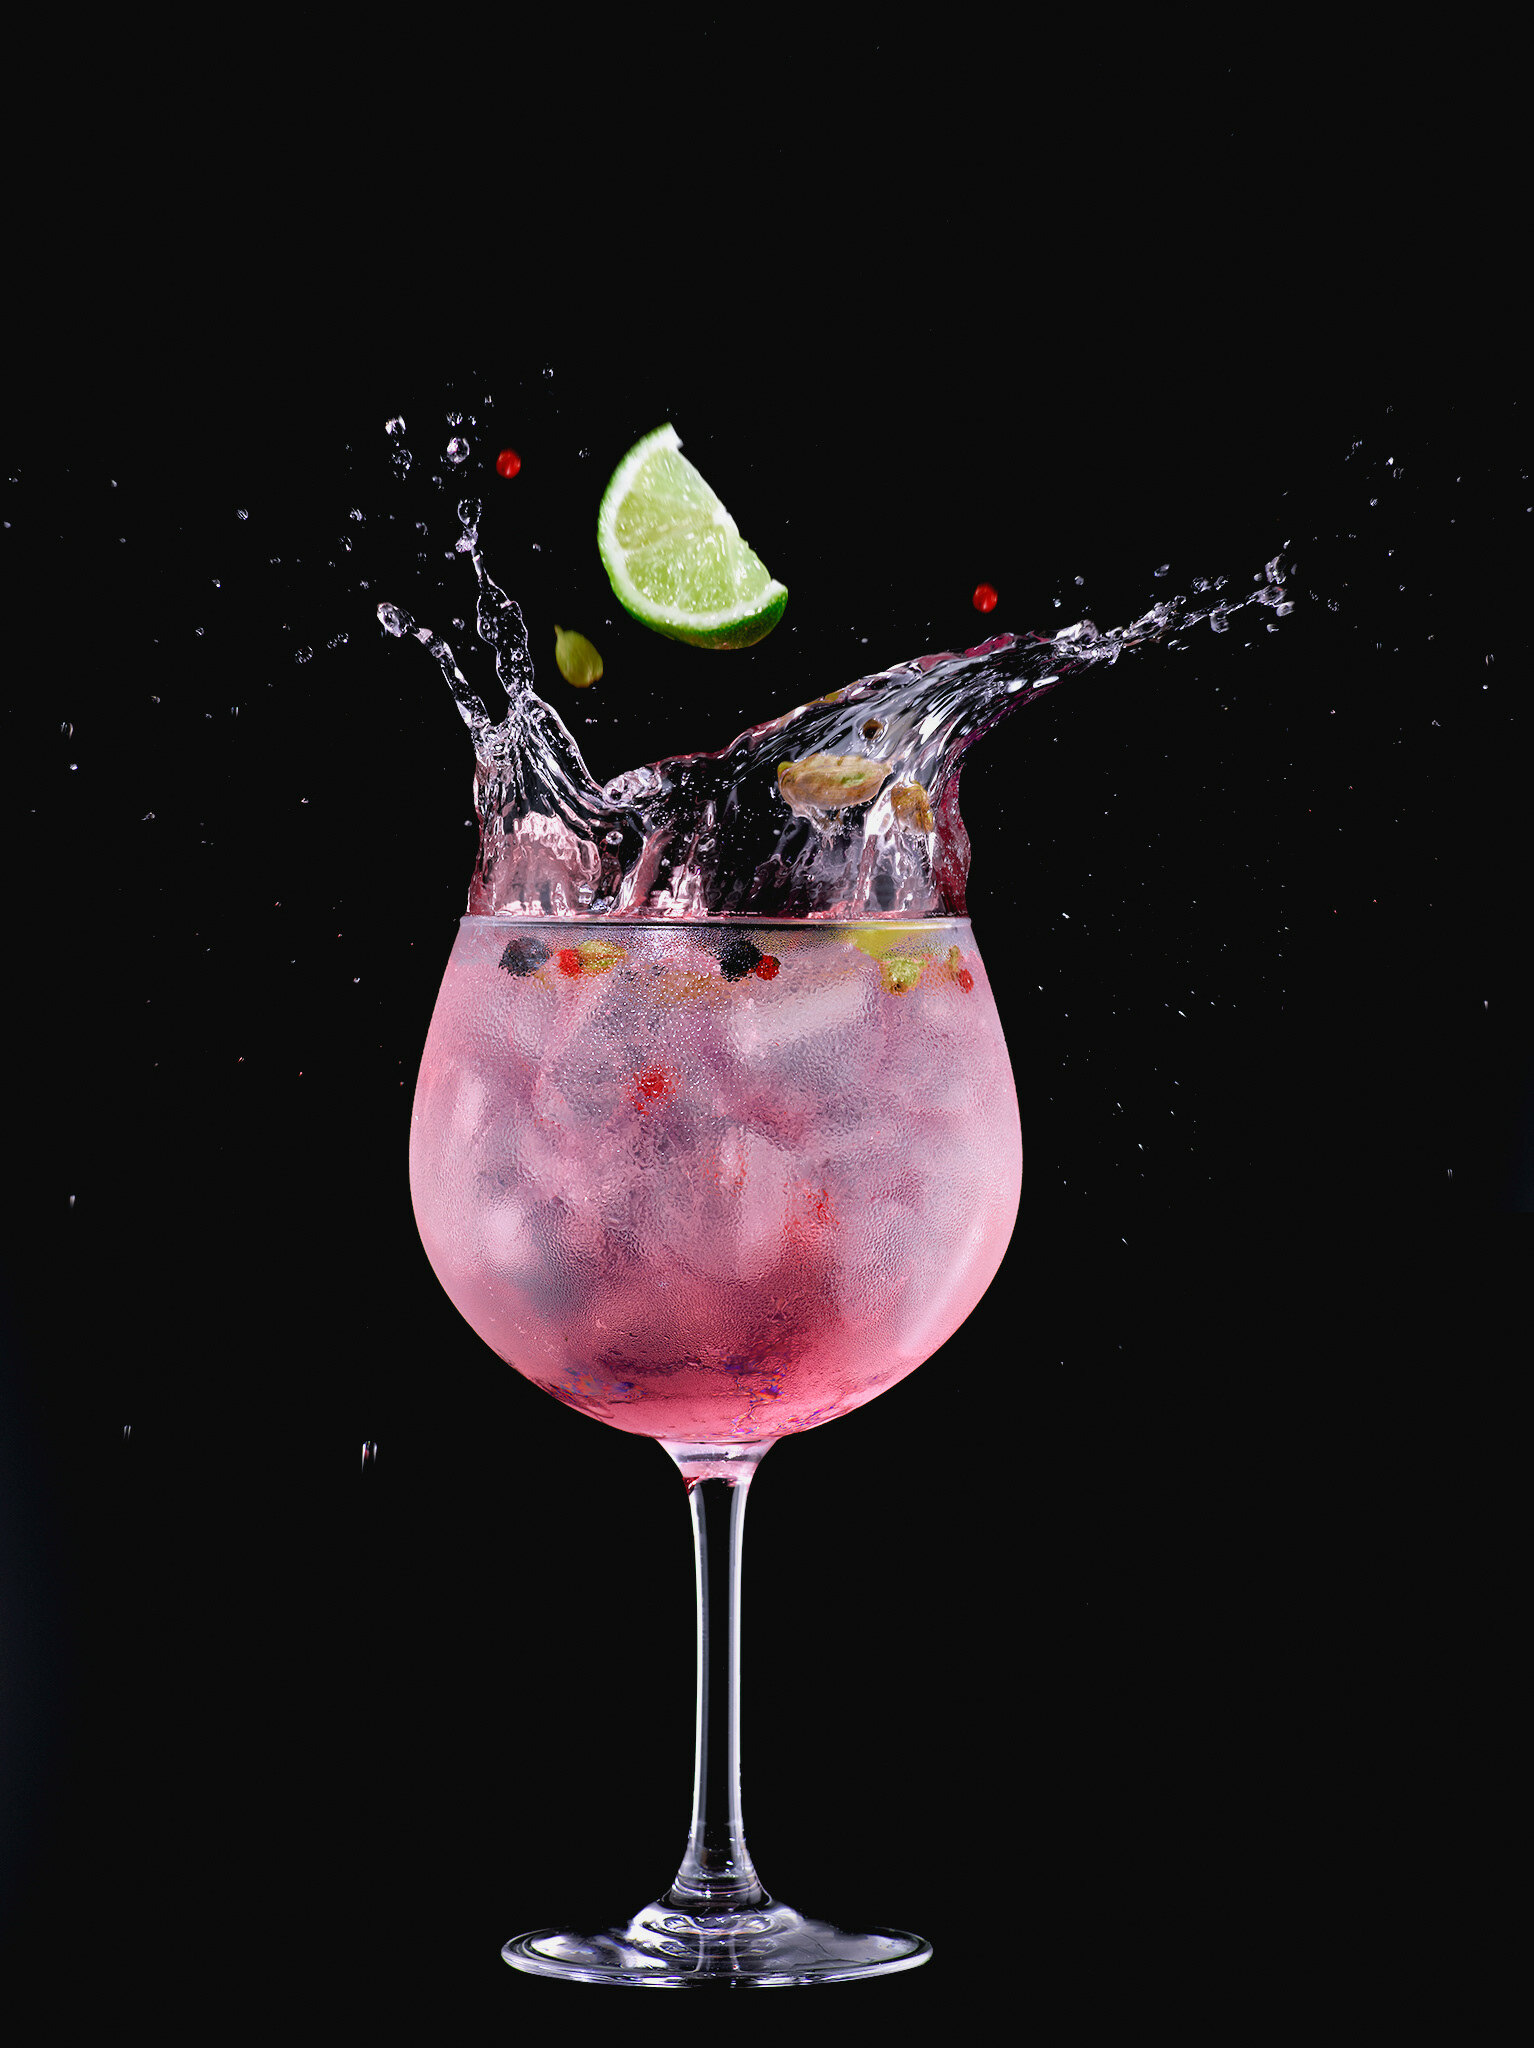 Изображение на чёрном фоне показывает винный стакан, в котором приготовлен коктейль &quot;джин-тоник малина&quot;. В стакане видны кубики льда ярко-розового цвета, а также долька лимона, которая лежит на краю стакана и выполняет функцию украшения. Коктейль заполнен ярко-красной жидкостью, которая поднимается к верху стакана и разбрызгивается, создавая впечатление движения. Стакан запотевший, что добавляет атмосферности и ощущения прохлады напитка.